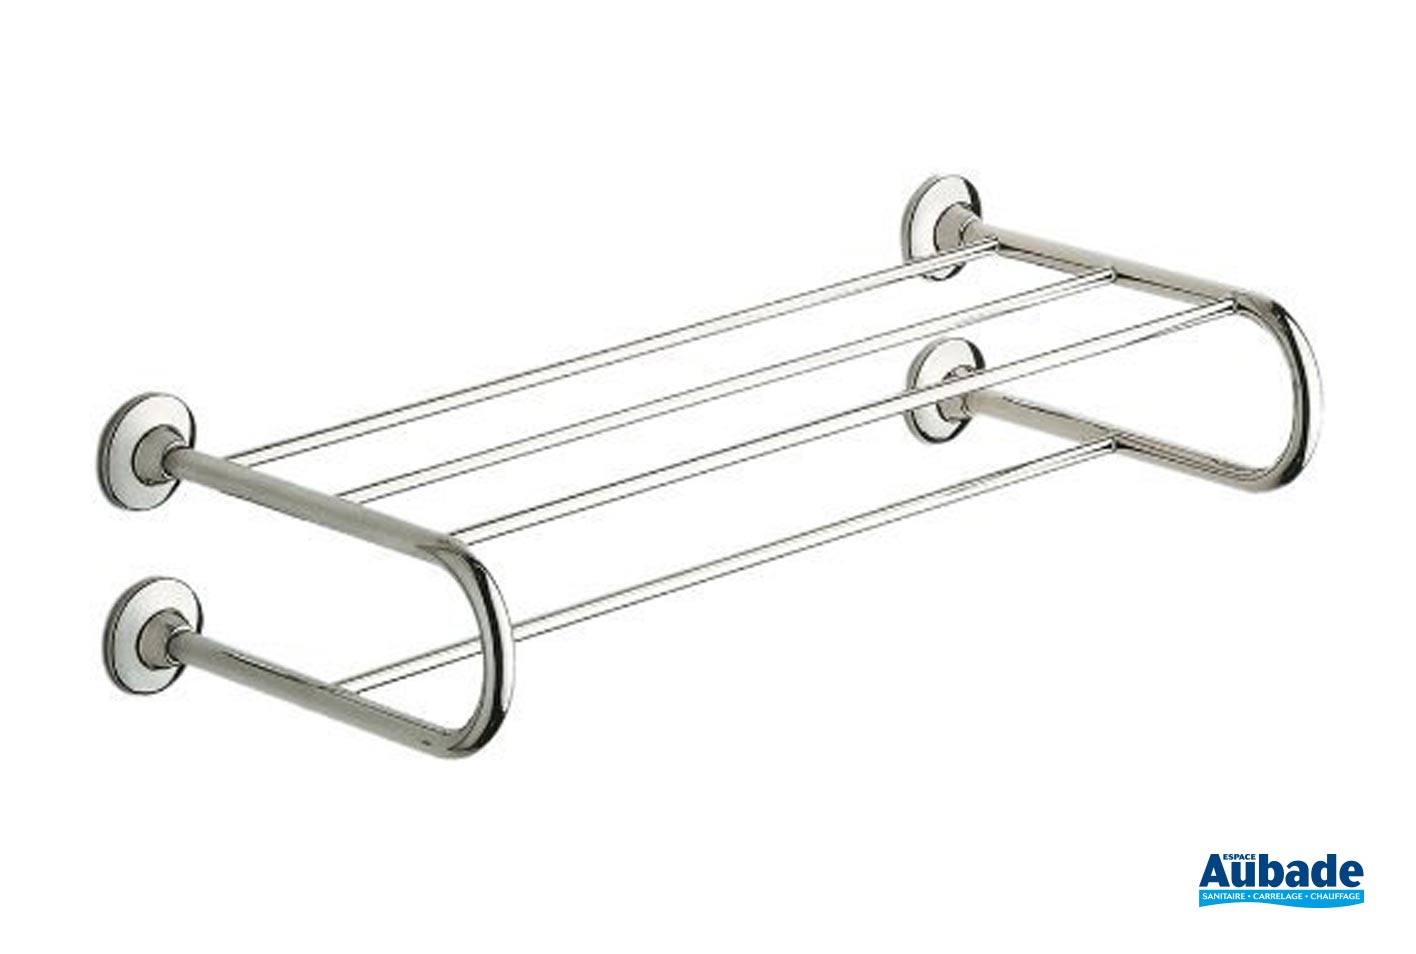 Salle de bain 56 cm rondes en Acier Inoxydable Double Porte-Serviettes Rack Bar Support Chrome